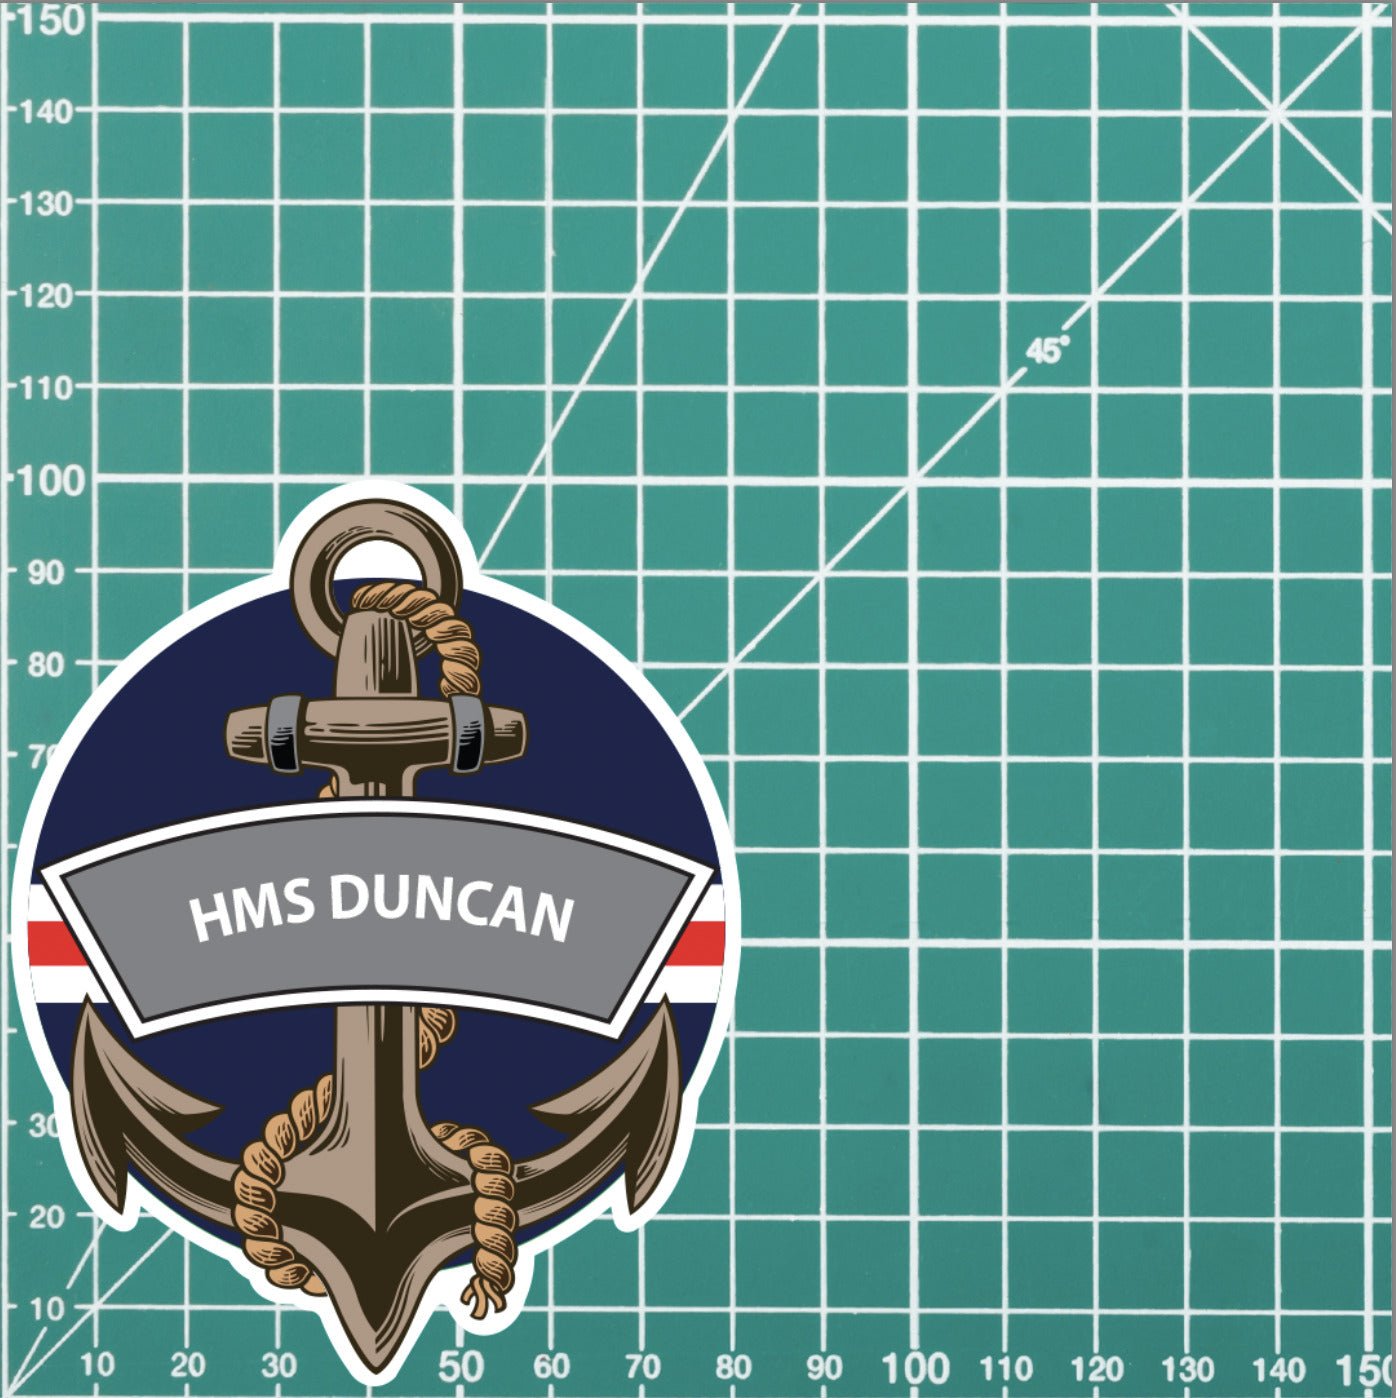 HMS Duncan Royal Navy Waterproof Vinyl Sticker redplume